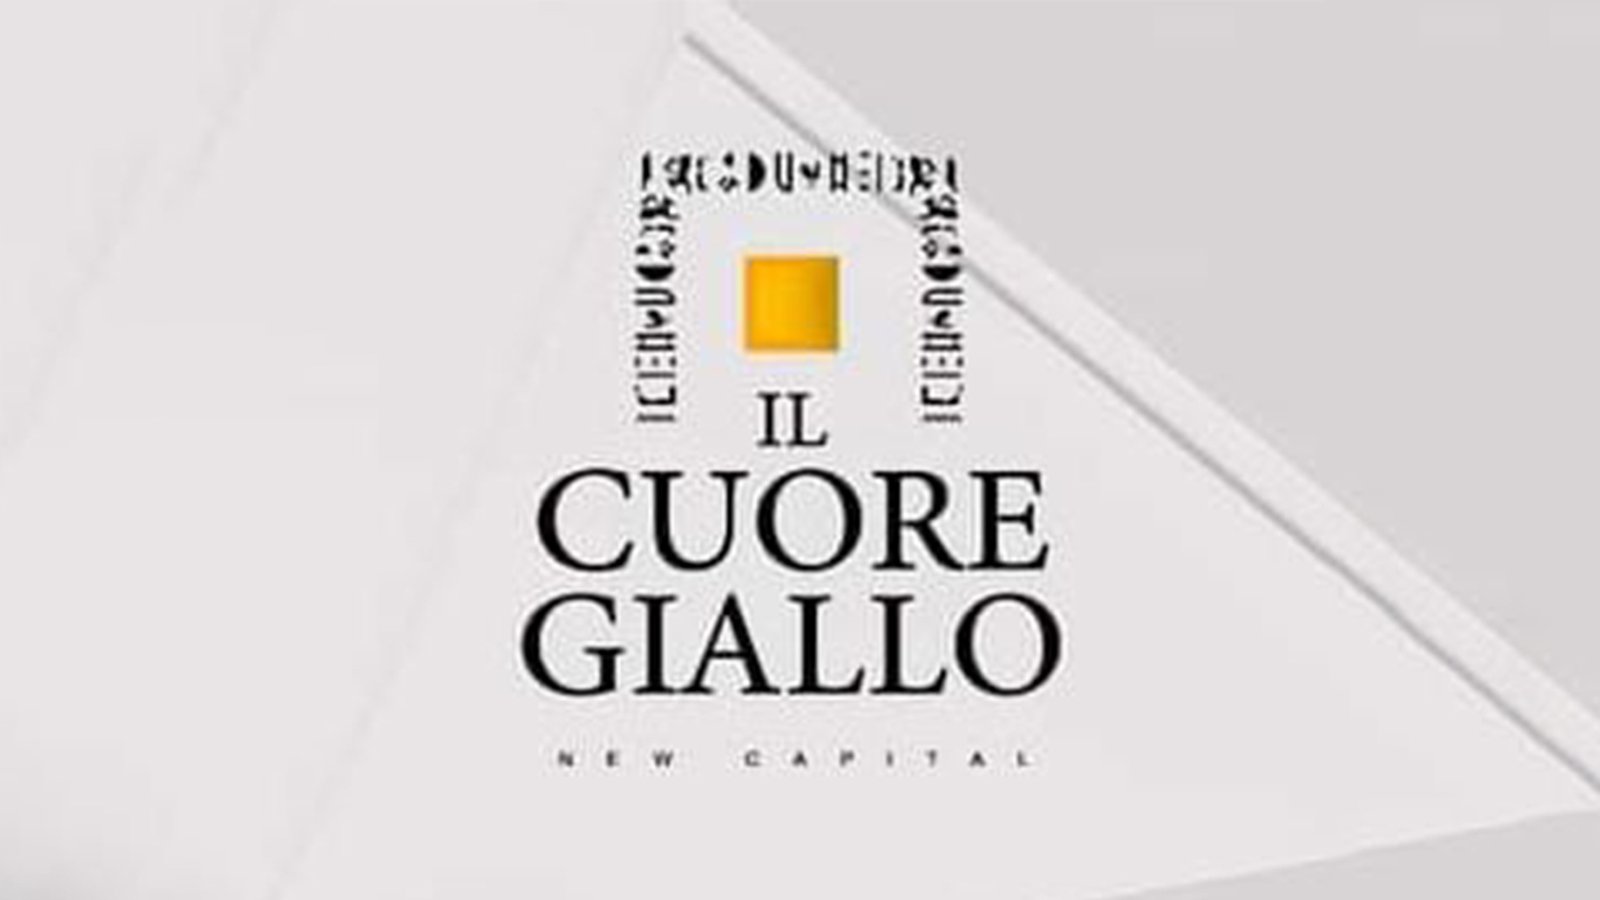 IL CUORE GIALLO New Capital